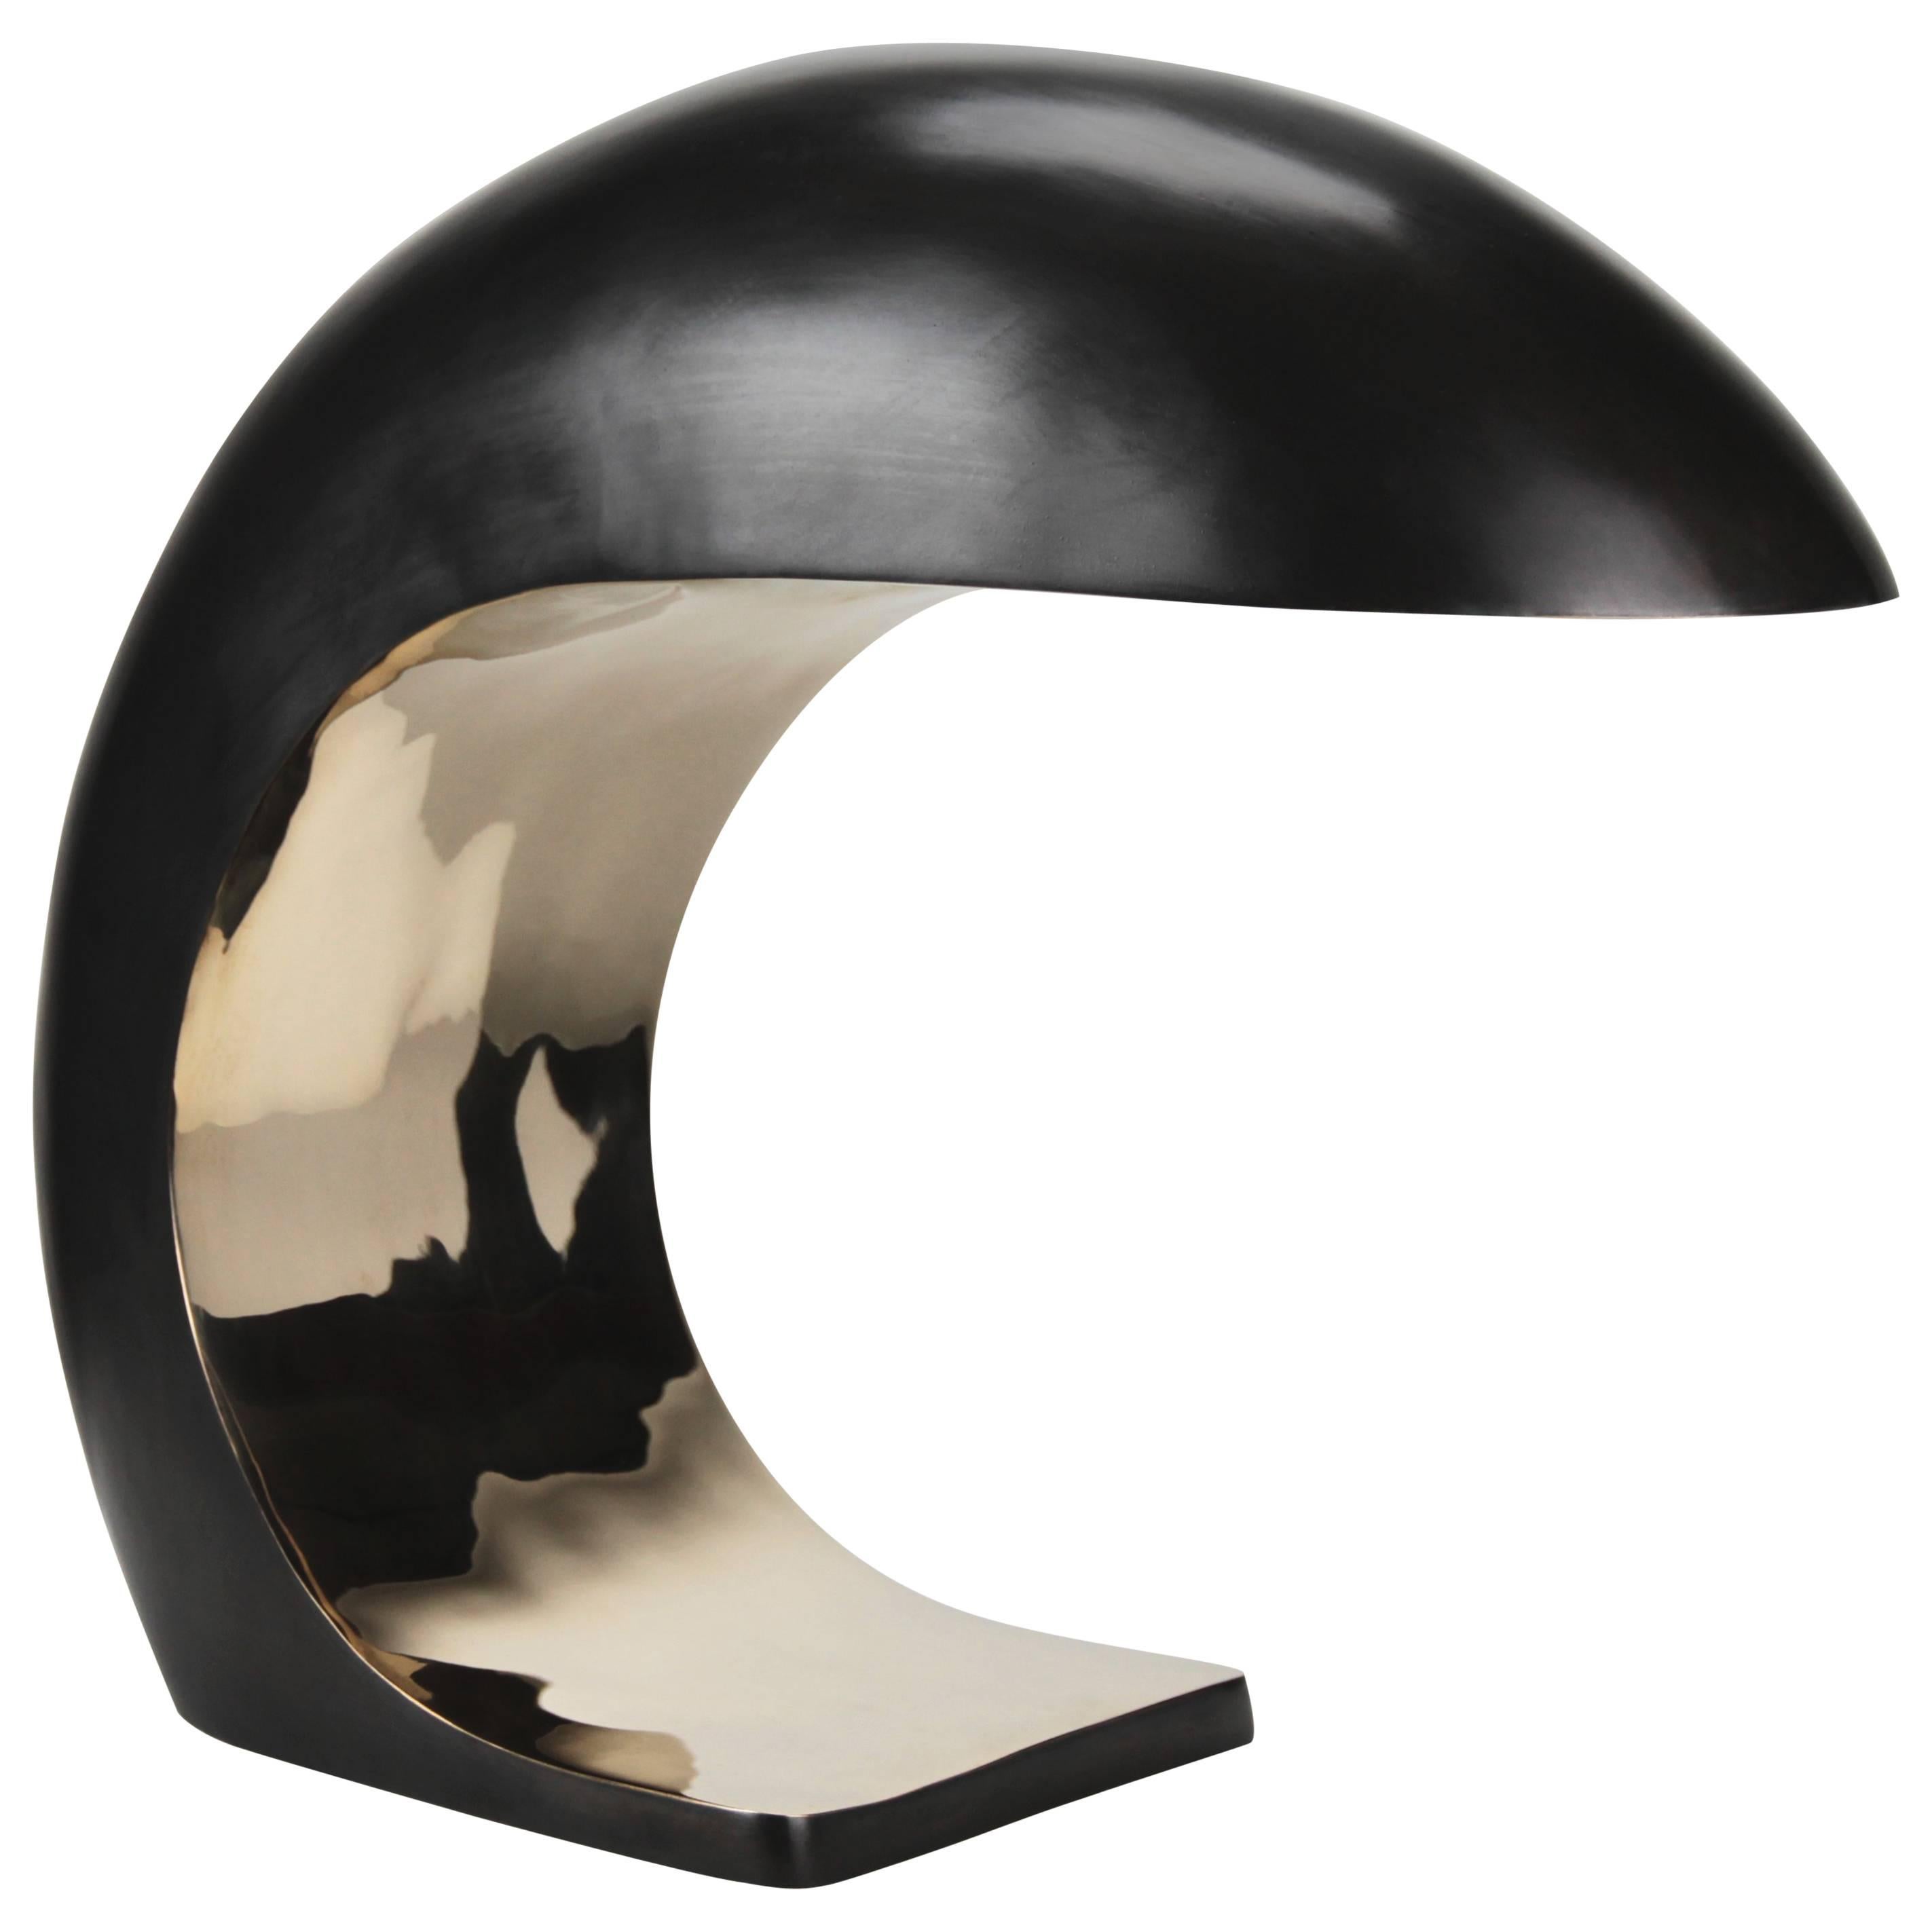 La lampe Nautilus en lampe s'inspire du design italien du milieu du siècle.
Elle est en bronze moulé et pèse jusqu'à 12,7 à 13,6 kg. La coque extérieure a une patine noircie et la face est polie jusqu'à obtention d'une finition miroir et cirée.
 
Le